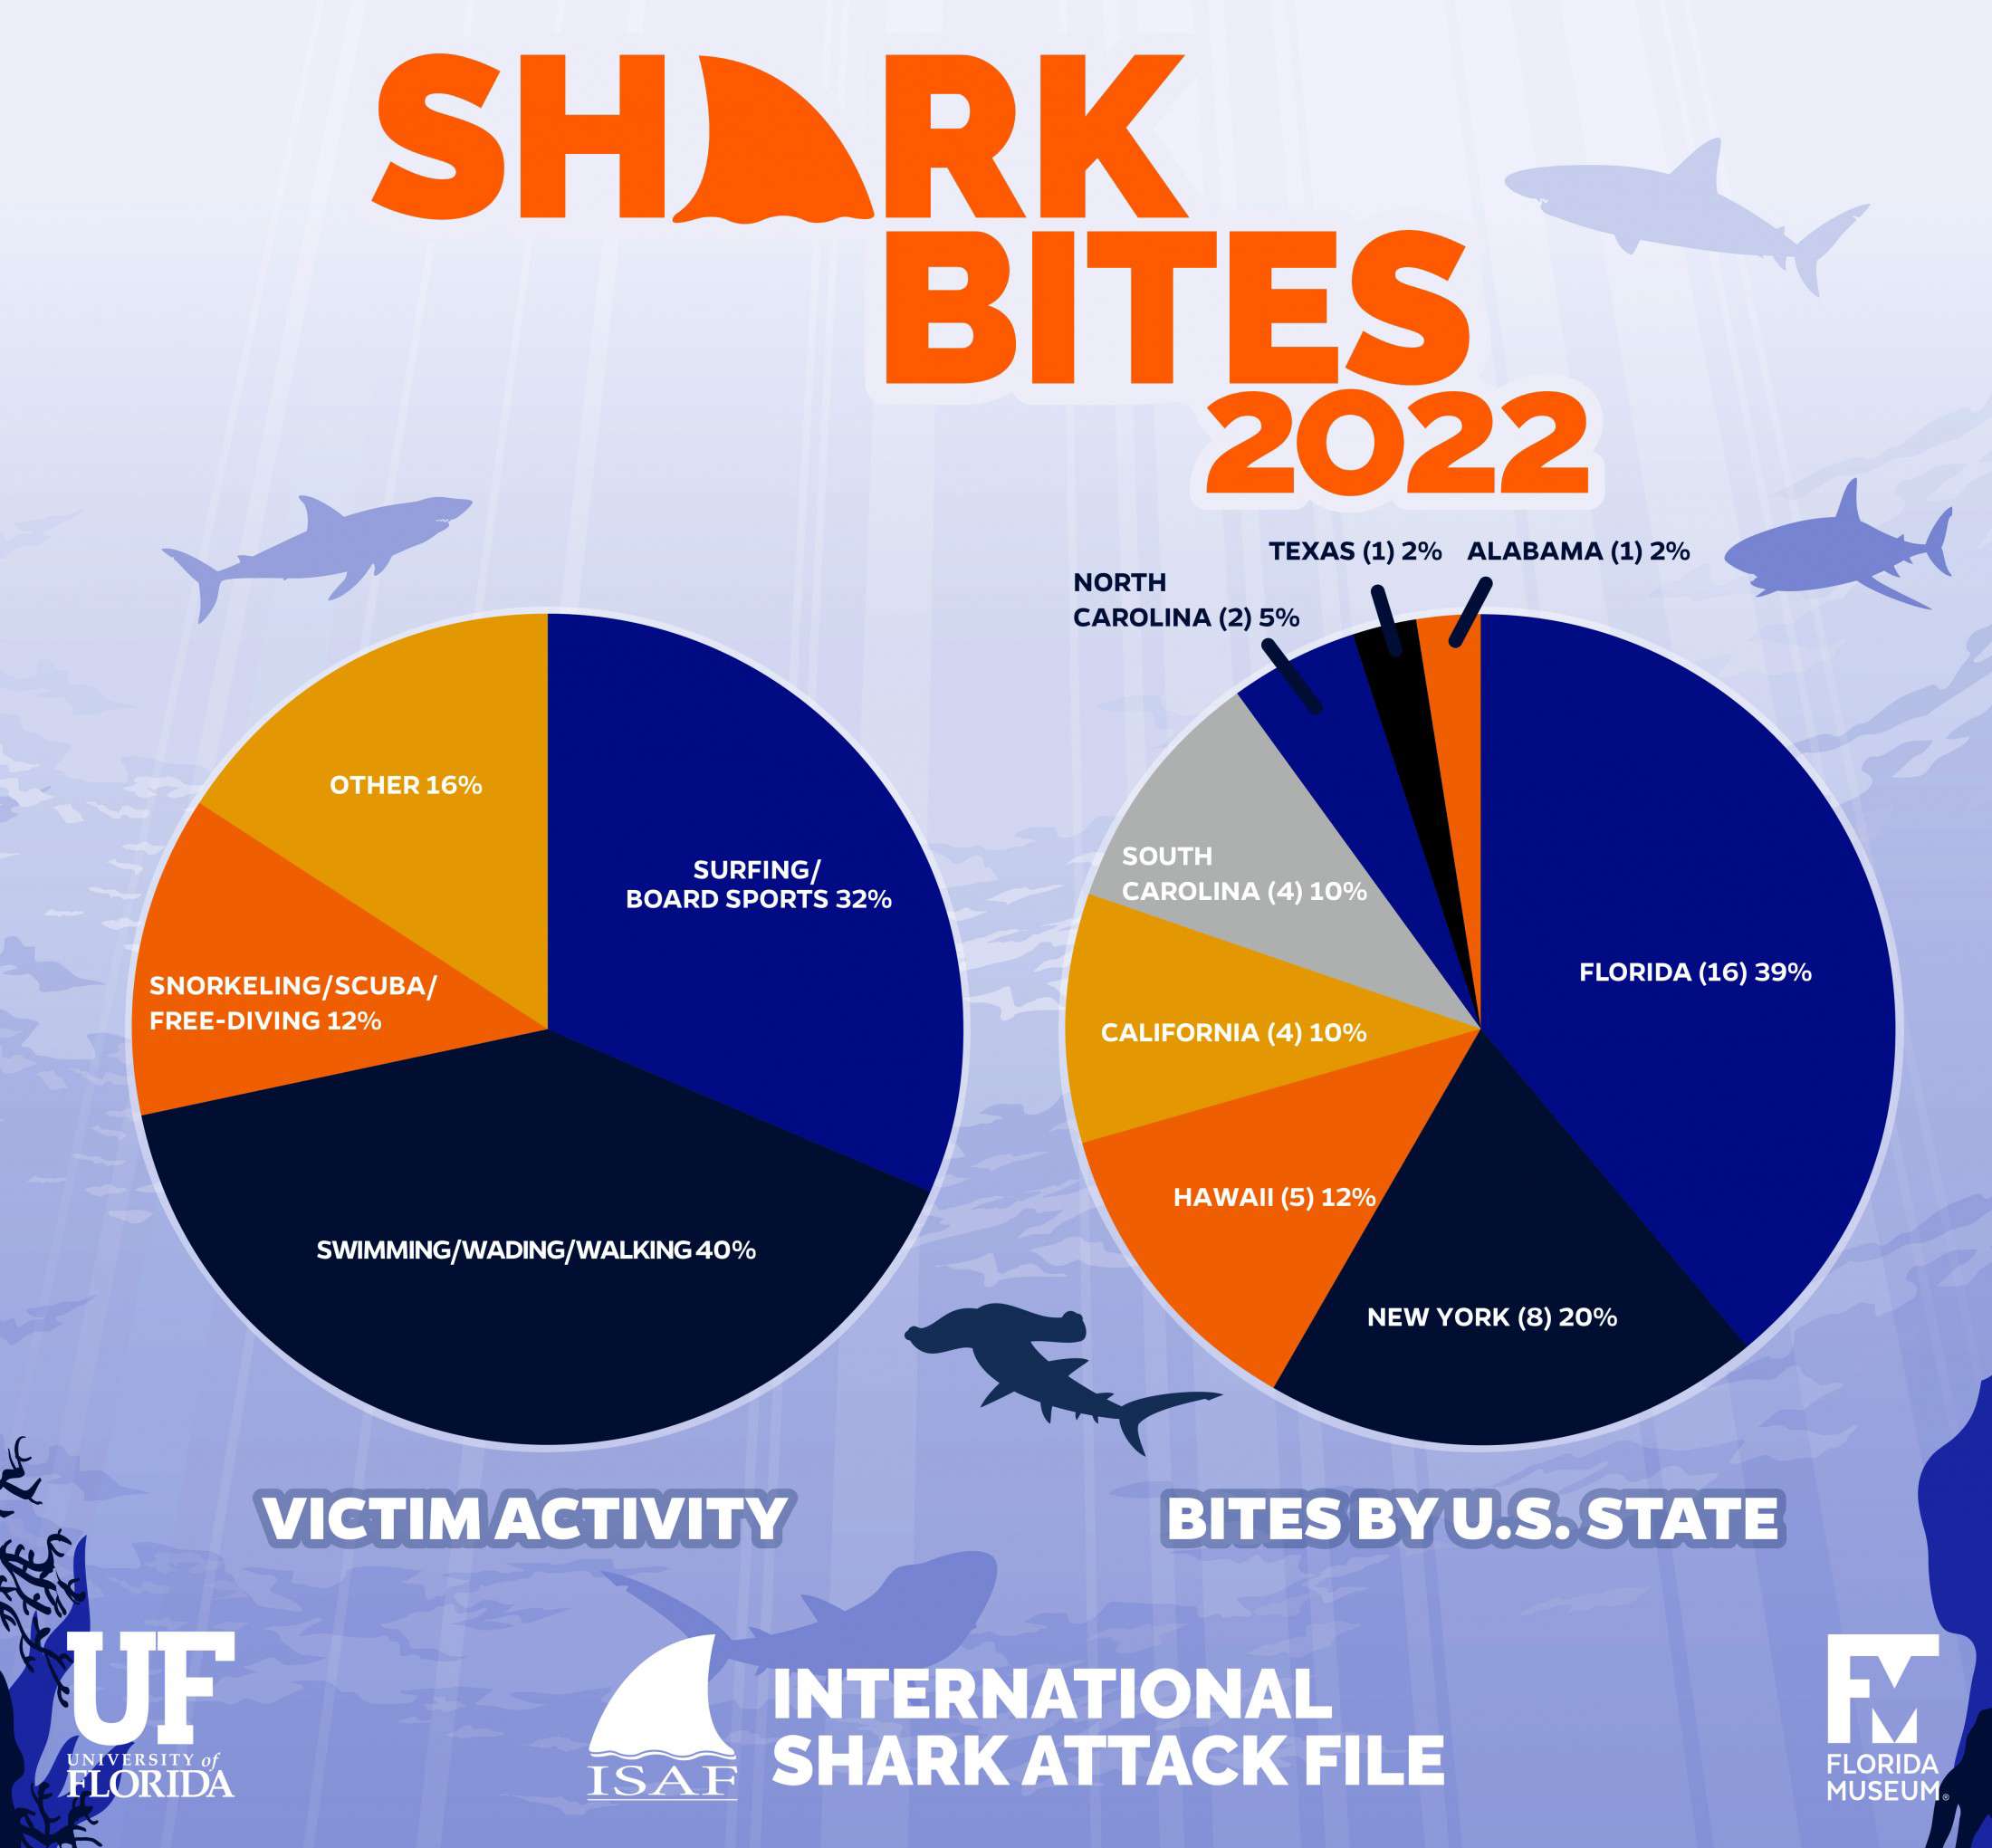 Σε αντιστοιχία με τα προηγούμενα έτη, η Φλόριντα είχε και πάλι τον υψηλότερο αριθμό δαγκωμάτων καρχαριών απ' οποιαδήποτε περιοχή στη Γη, ενώ η Νέα Υόρκη σημείωσε το ρεκόρ των οκτώ δαγκωμάτων (Πηγή: JANE DOMINGUEZ/UNIVERSITY OF FLORIDA)